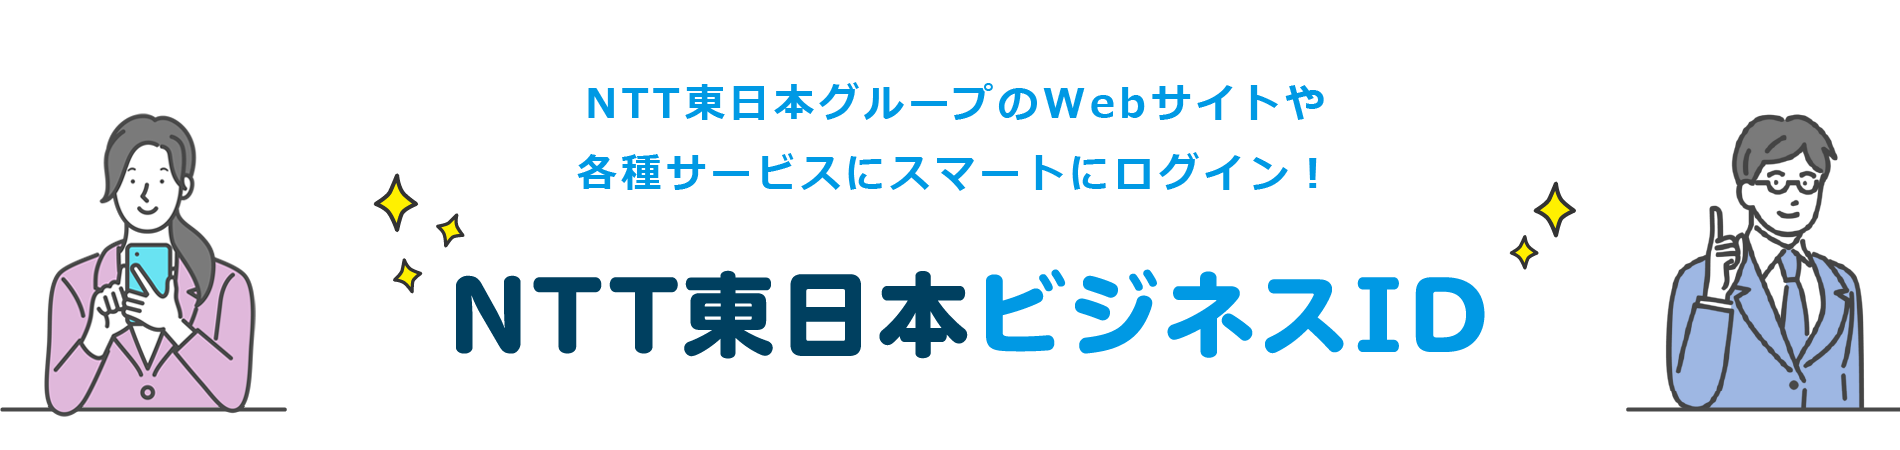 NTT東日本グループの法人のお客さま向けWebサイトや各種サービスにスマートにログイン！NTT東日本ビジネスID